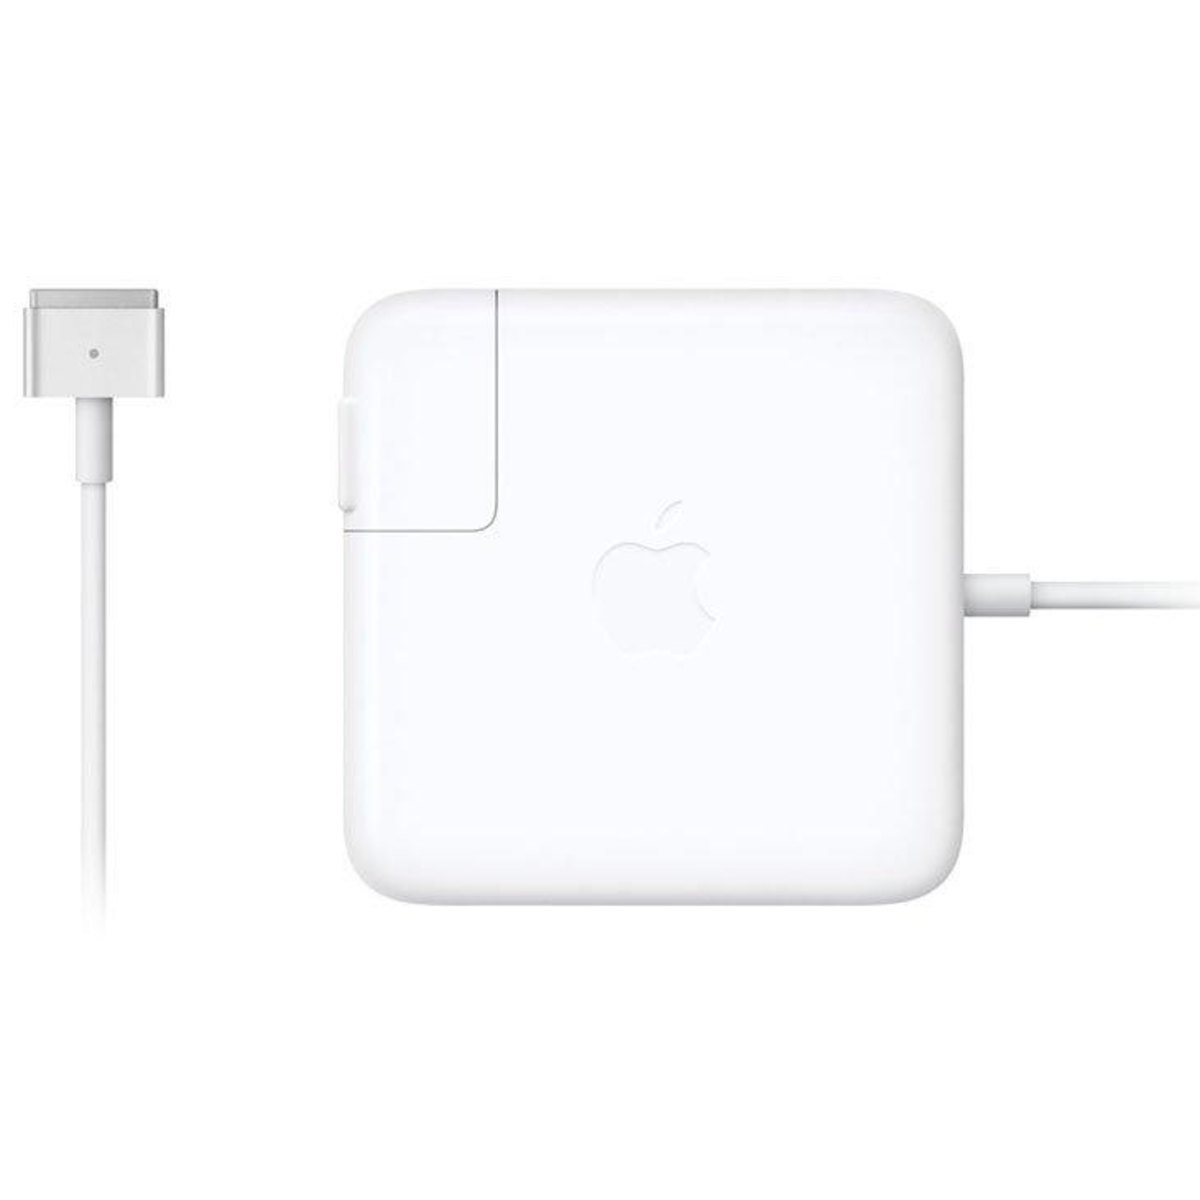 Menor preço em Carregador Apple MagSafe 2 de 60W para MacBook Pro Tela Retina 13' - MD565BZ/A